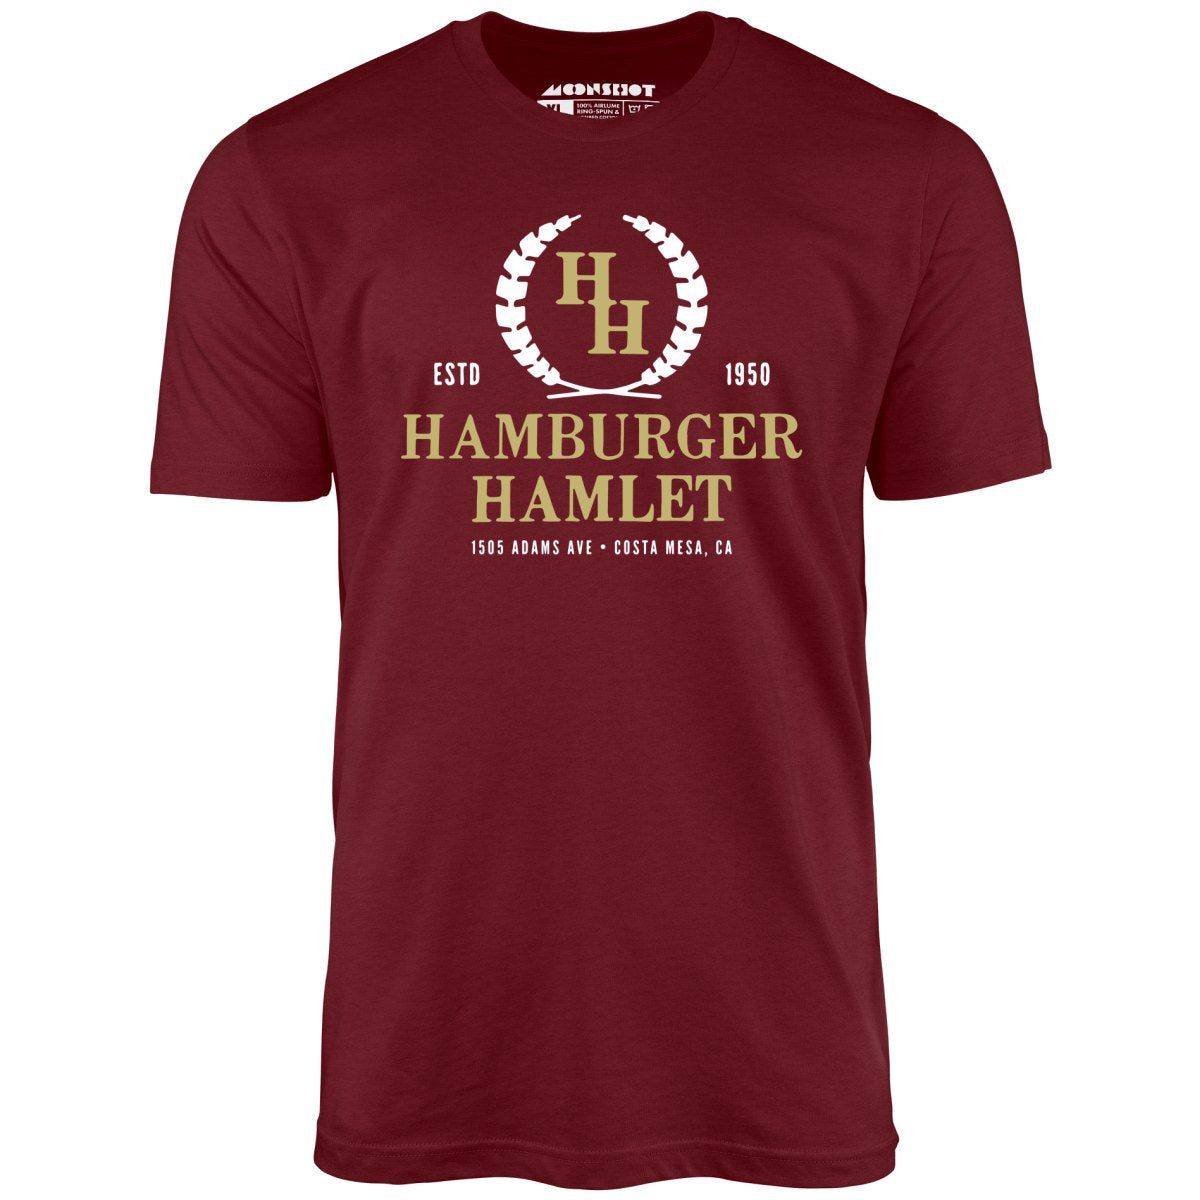 Hamburger Hamlet - Costa Mesa, CA - Vintage Restaurant - Unisex T-Shirt